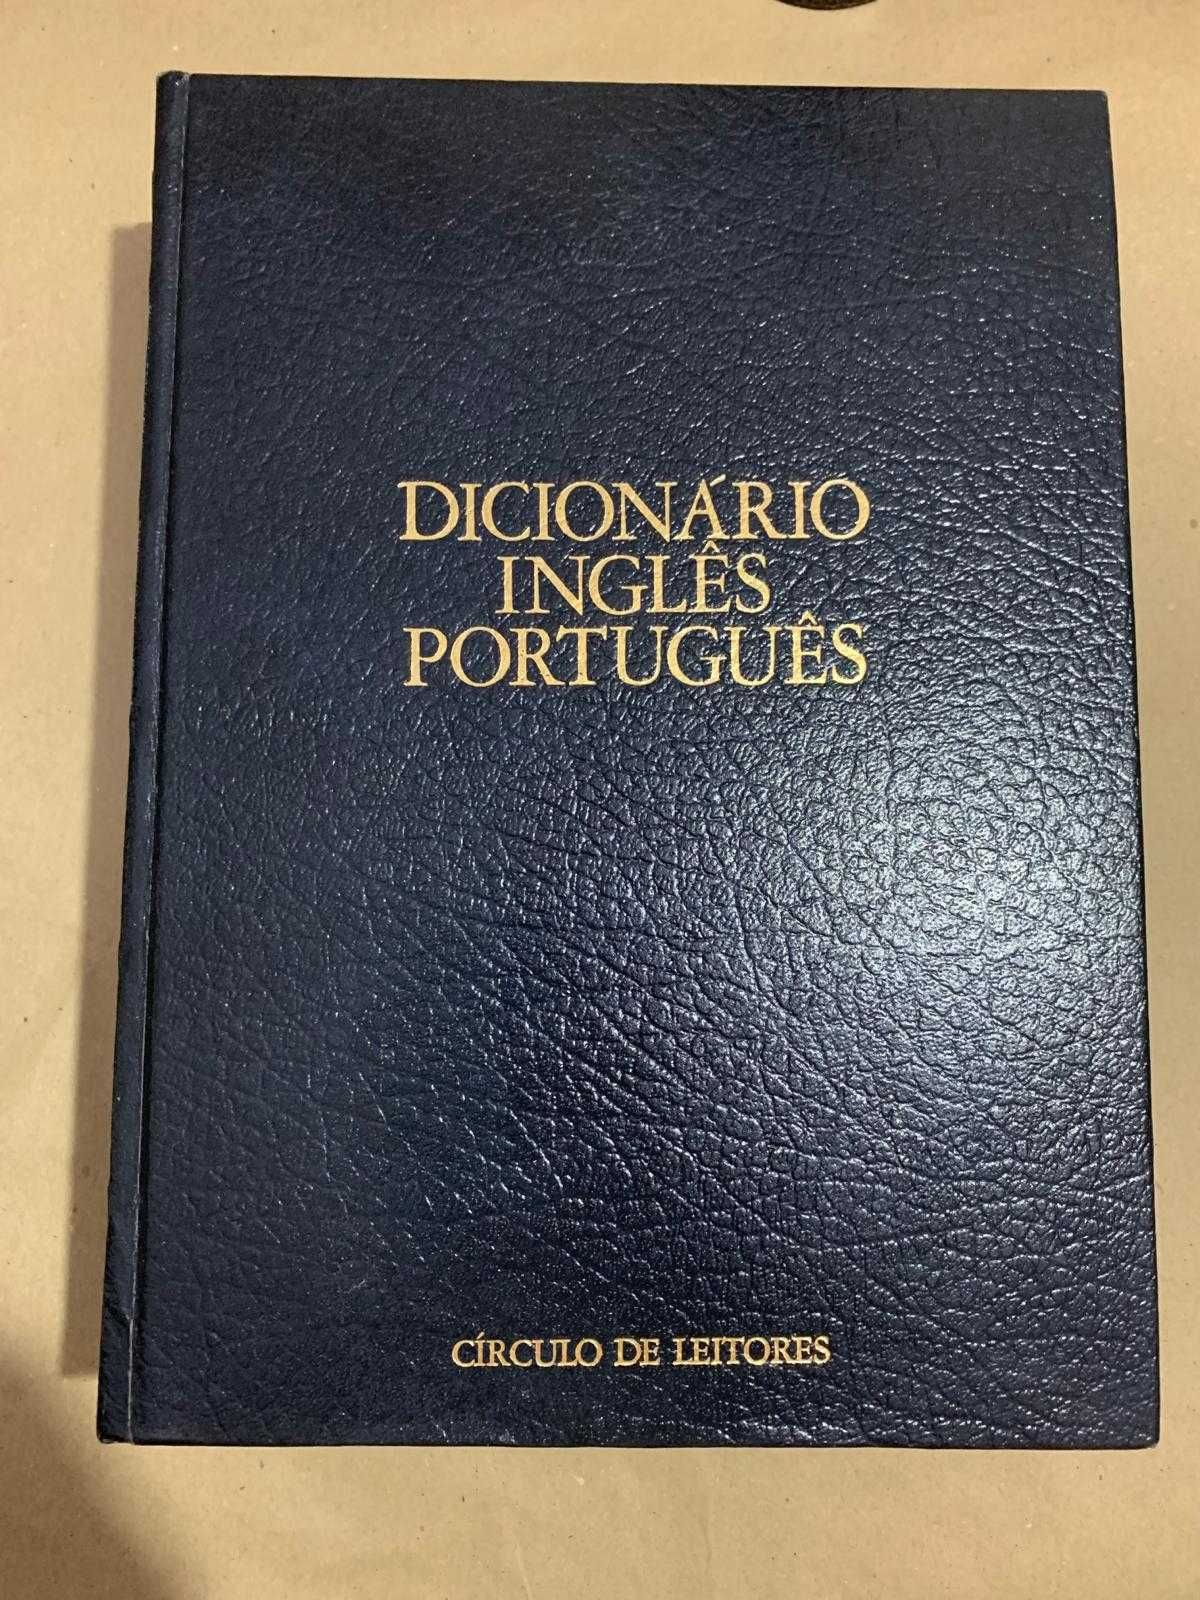 Moderno Dicionário de Língua Portuguesa + Dicionário Inglês Português